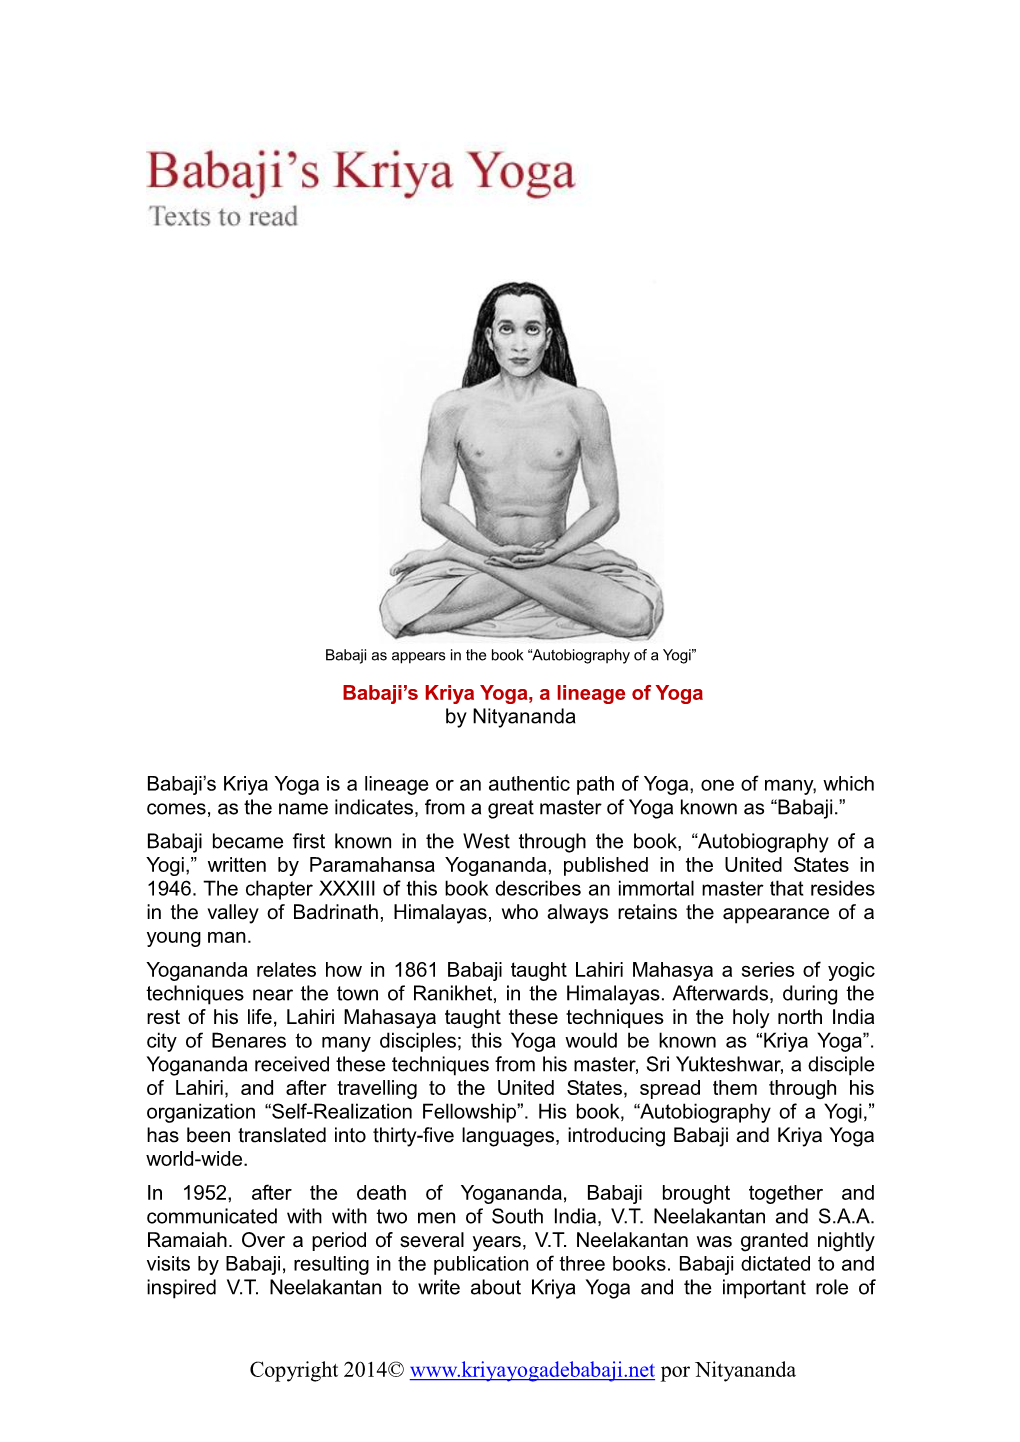 Babaji's Kriya Yoga, a Lineage of Yoga